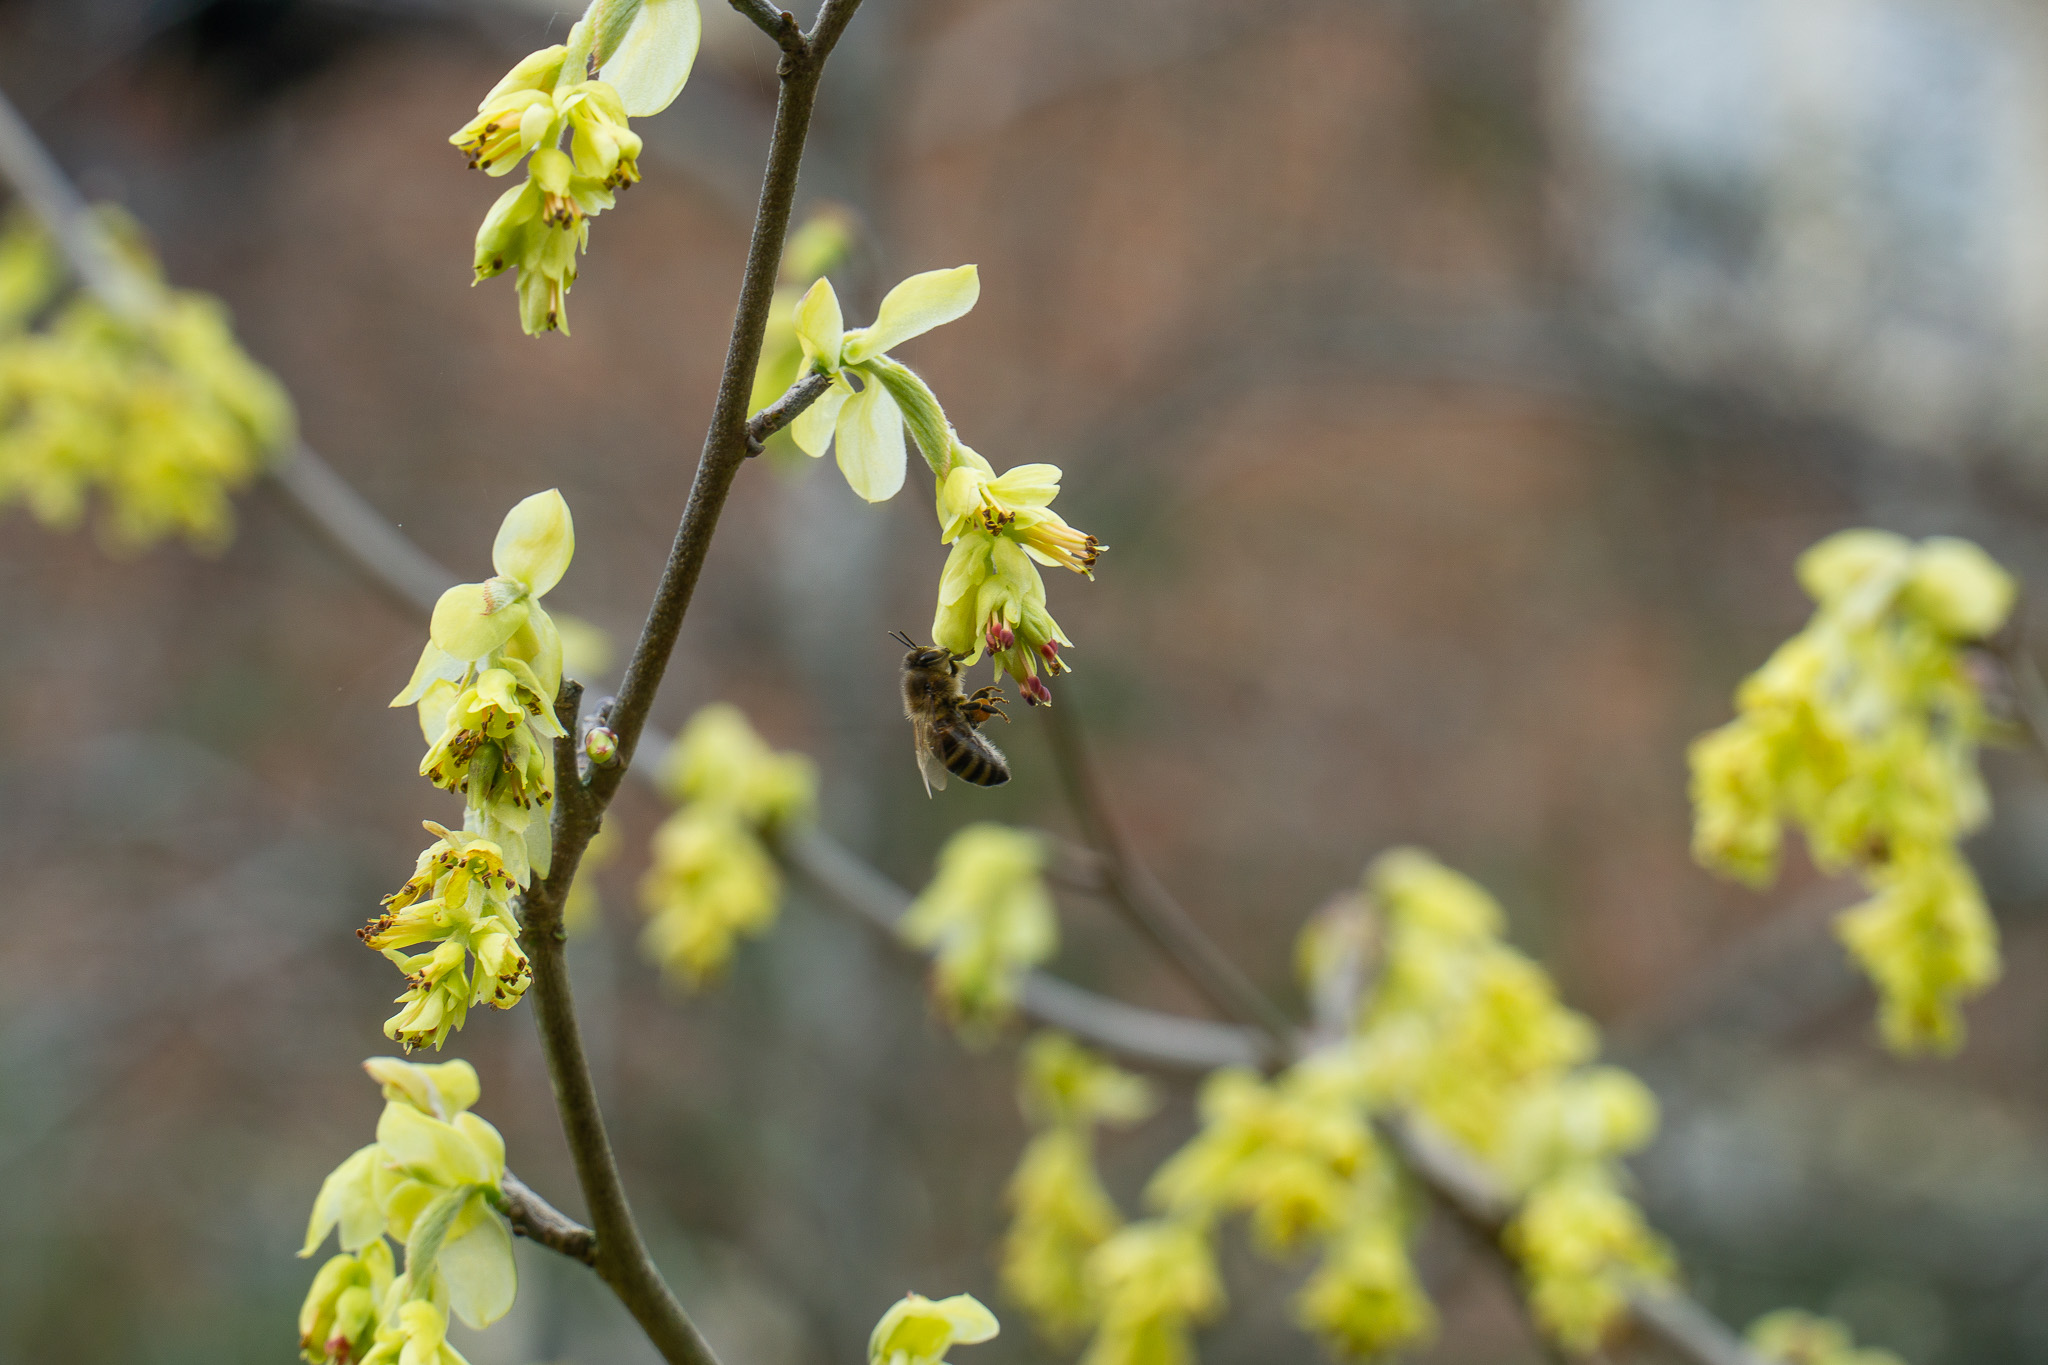 A newly awakened honeybee in March enjoying a snack from Somerville's buttercup hazel